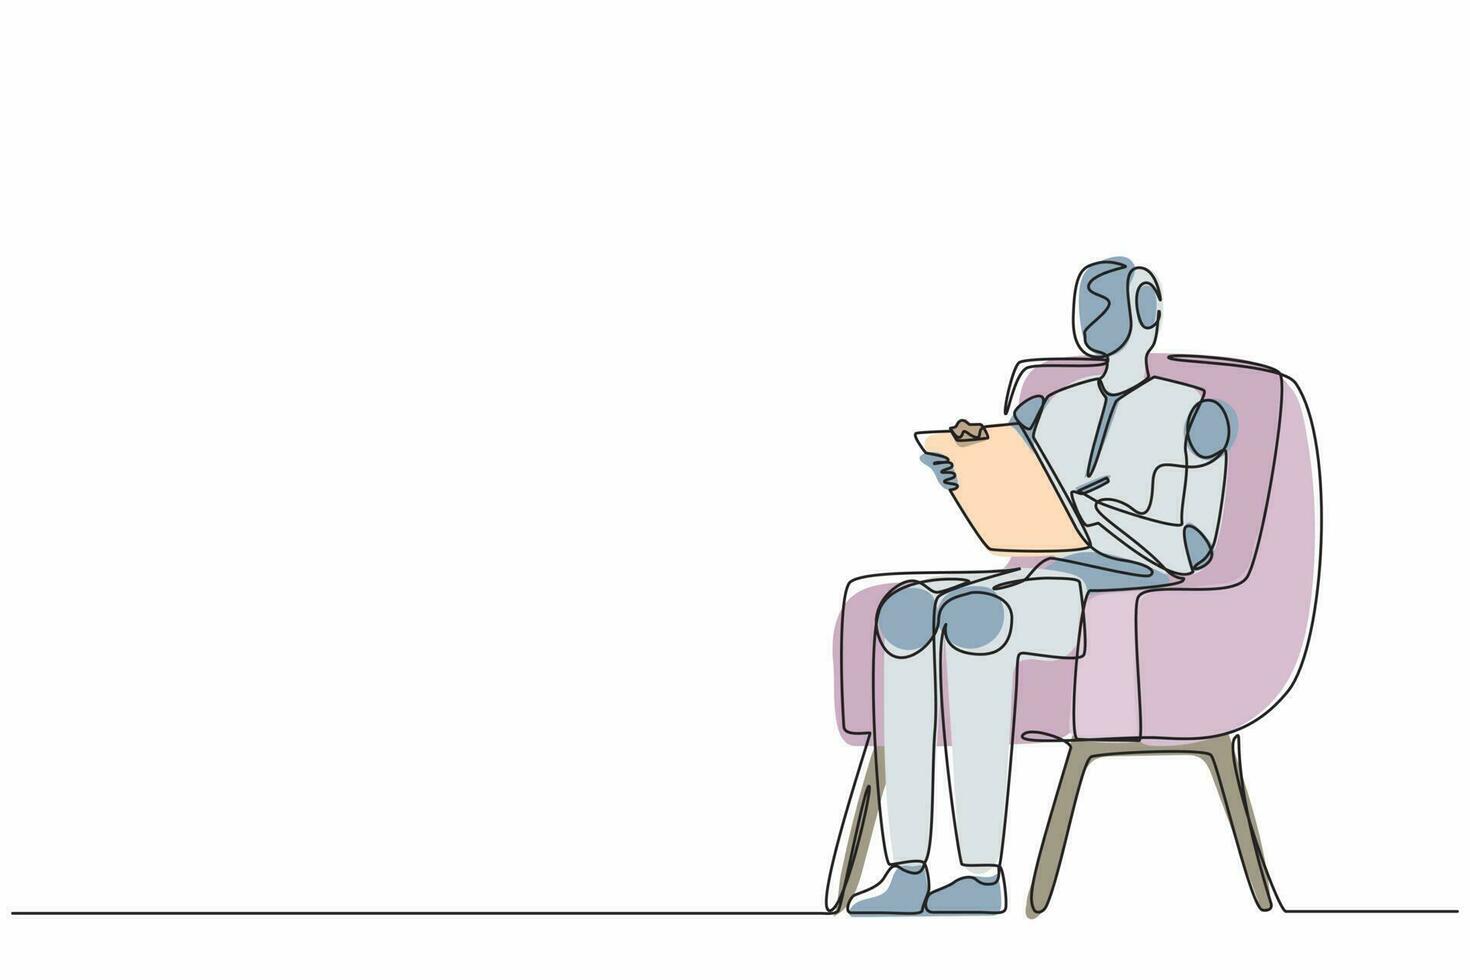 robots de dessin en ligne continue simples assis sur une chaise et écrivant sur le presse-papiers. technologie d'intelligence artificielle robotique moderne. industrie de la technologie électronique. une ligne dessiner vecteur de conception graphique